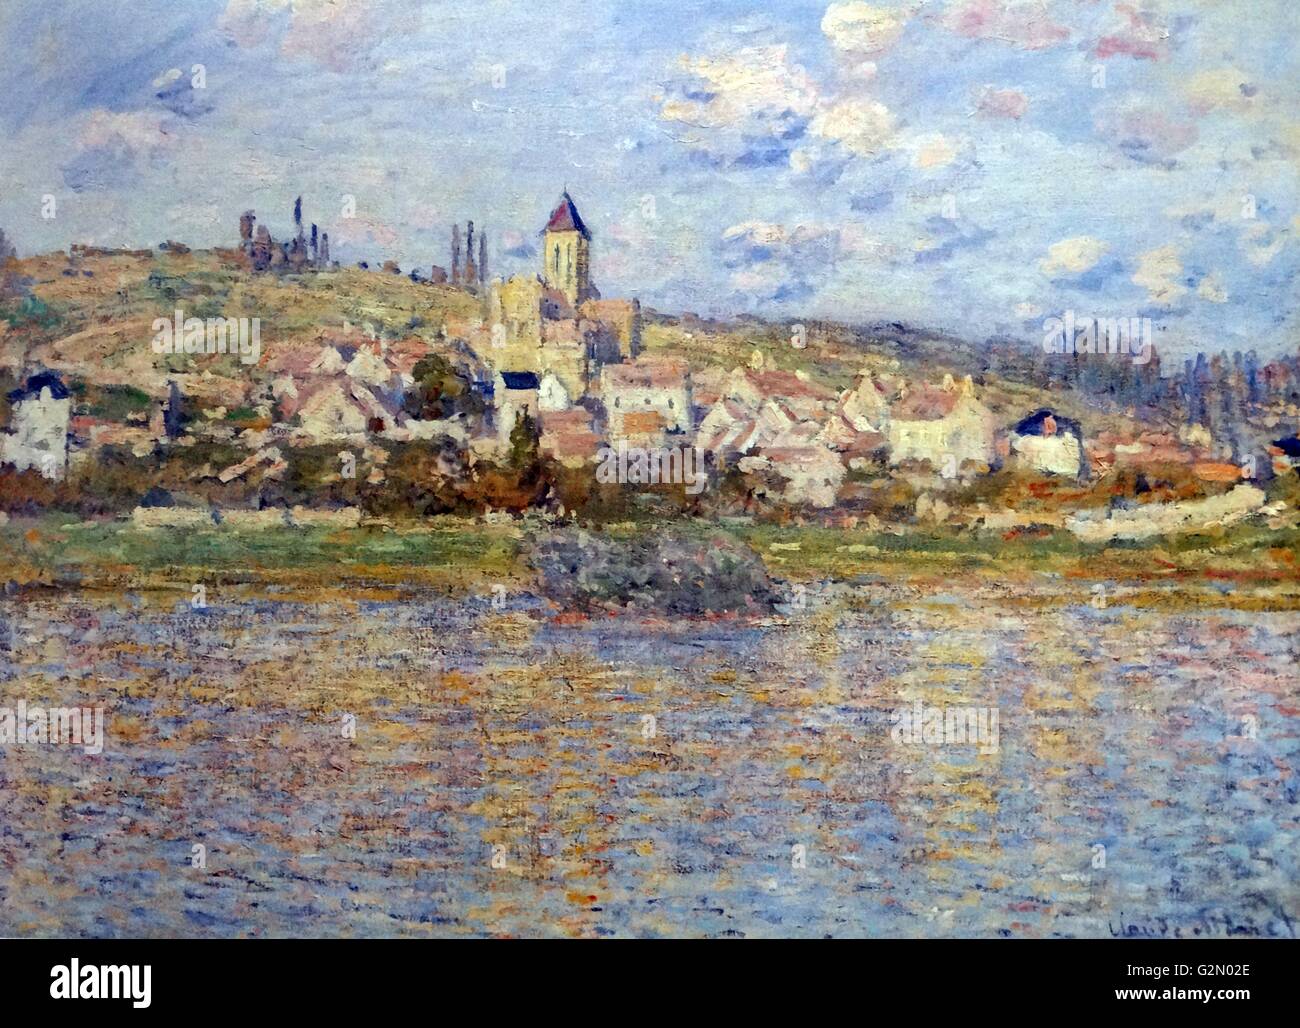 Öl auf Leinwand Gemälde des französischen Malers Claude Monet (14. November - 5. Dezember 1840), die Arbeit mit dem Titel "vetheuil". Abschluss der Arbeiten zwischen 1878 und 1879. Stockfoto